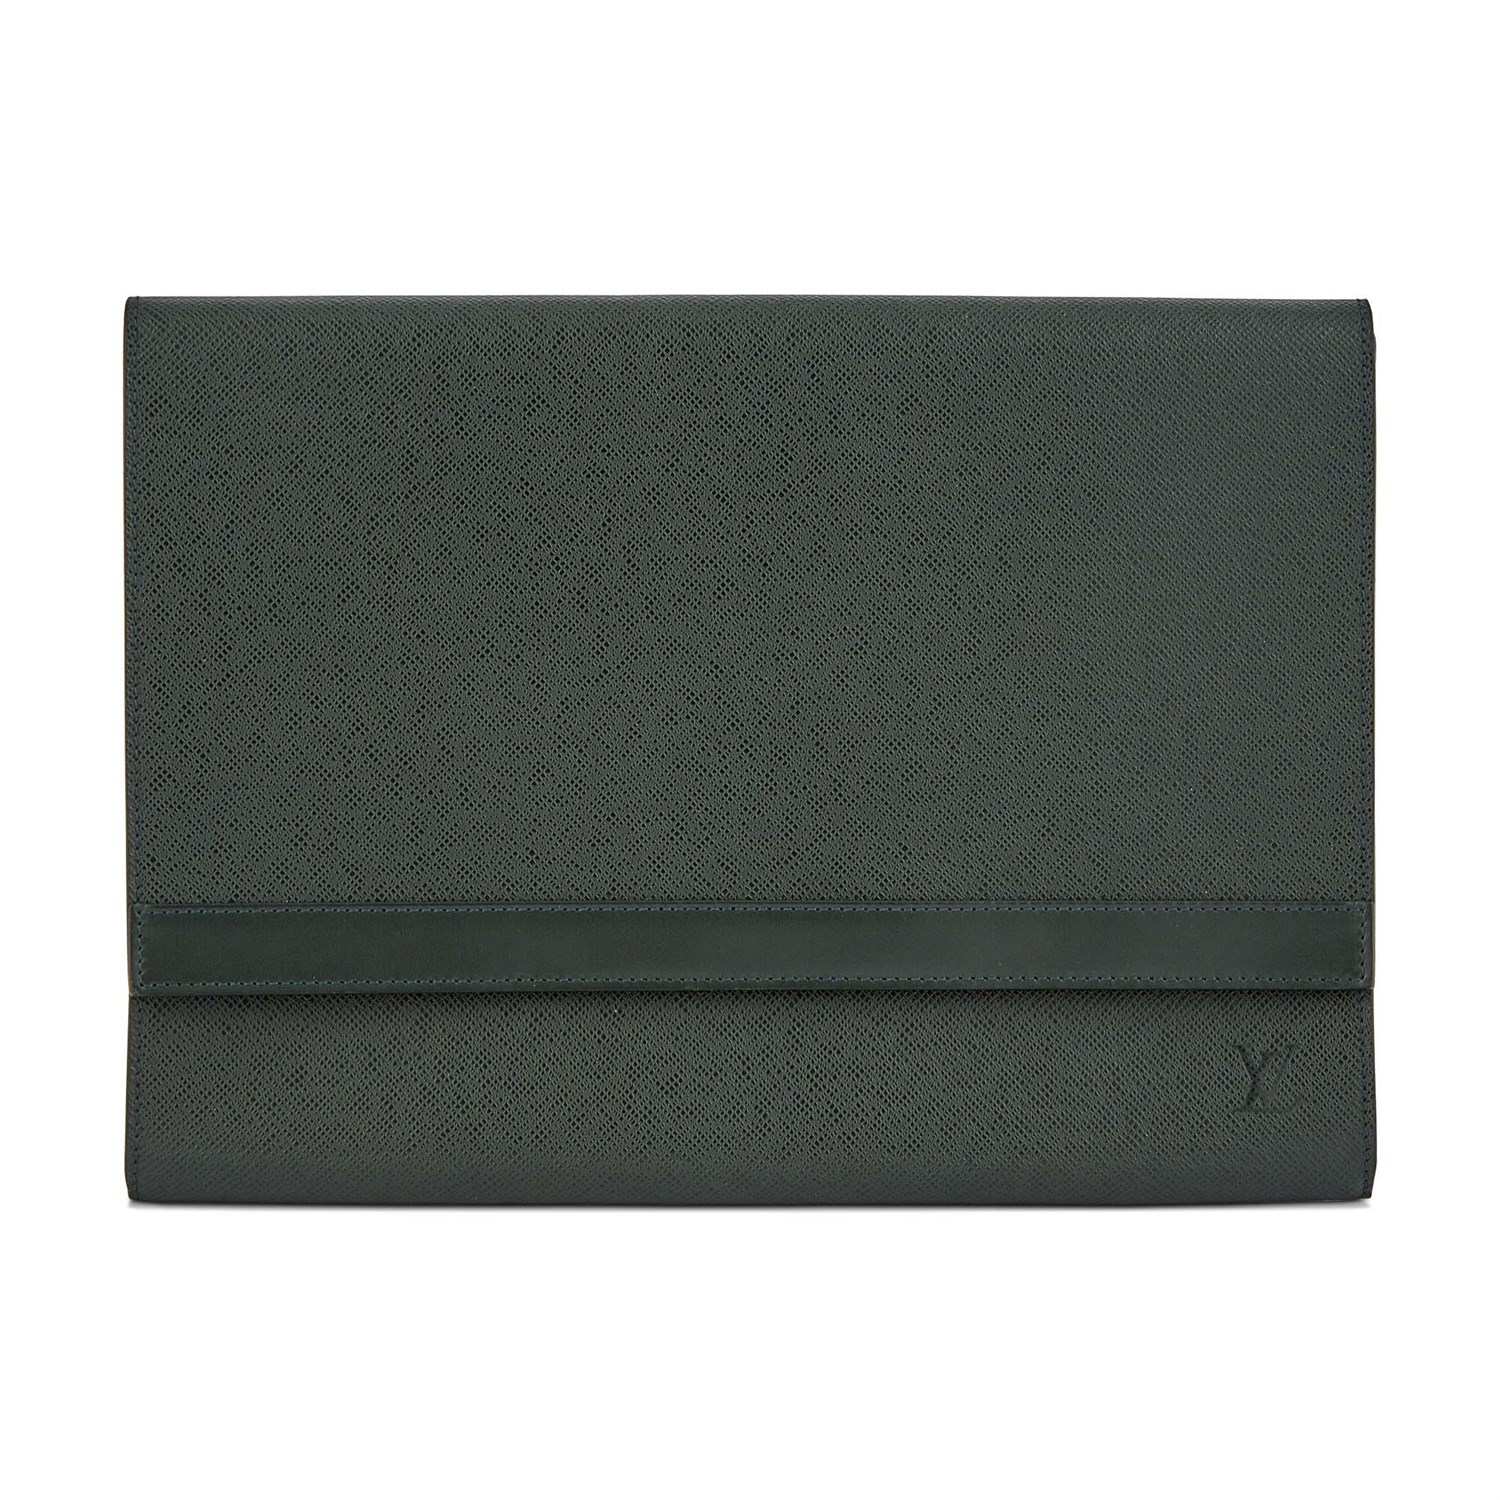 Lot 185 - Louis Vuitton Green Taiga Leather Folio Envelope